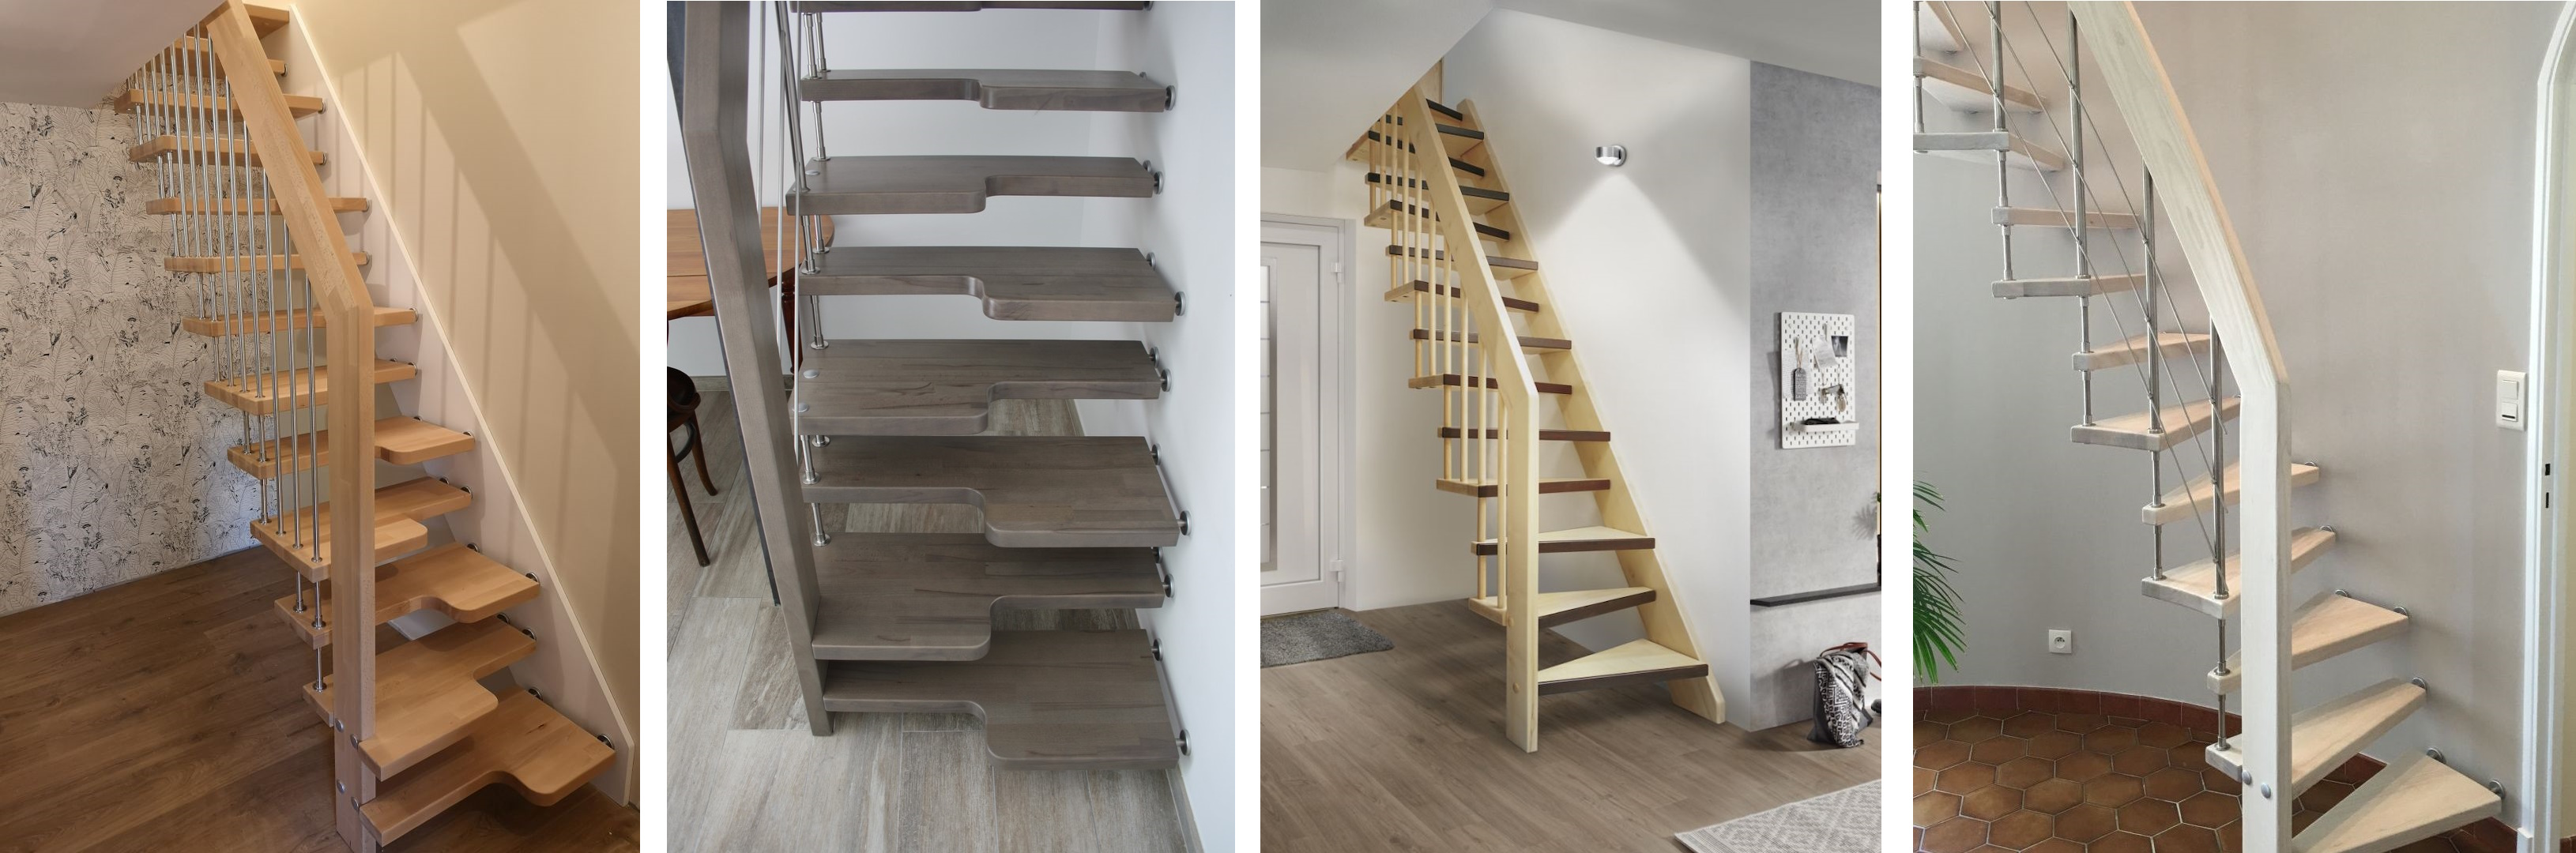 Escaliers gain de place pour les petits espaces